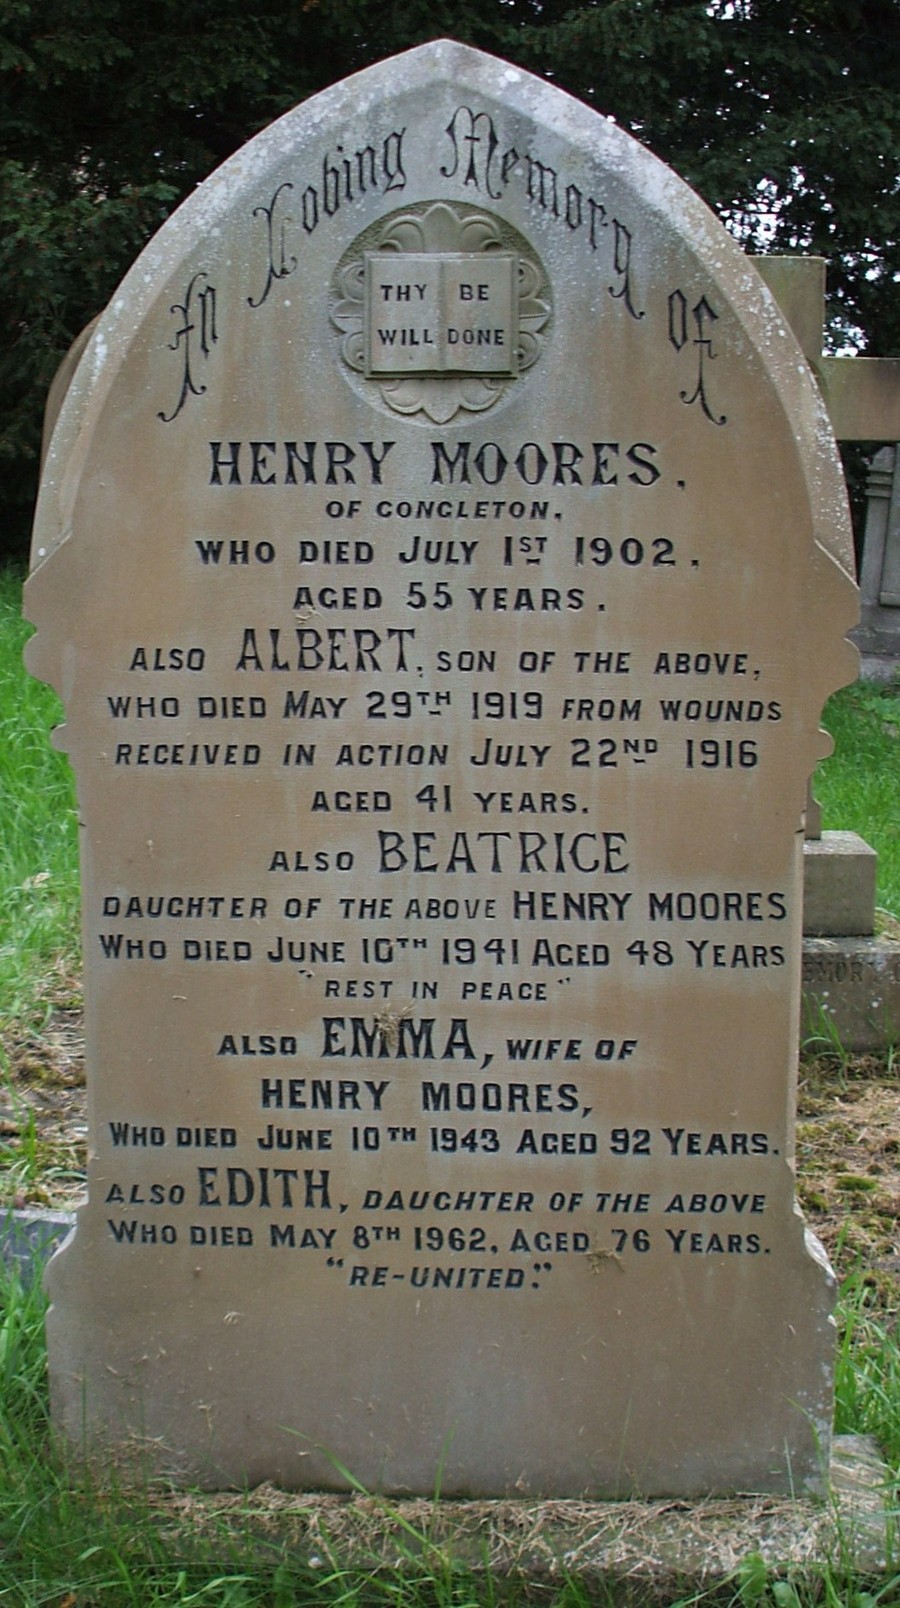 Albert Moores